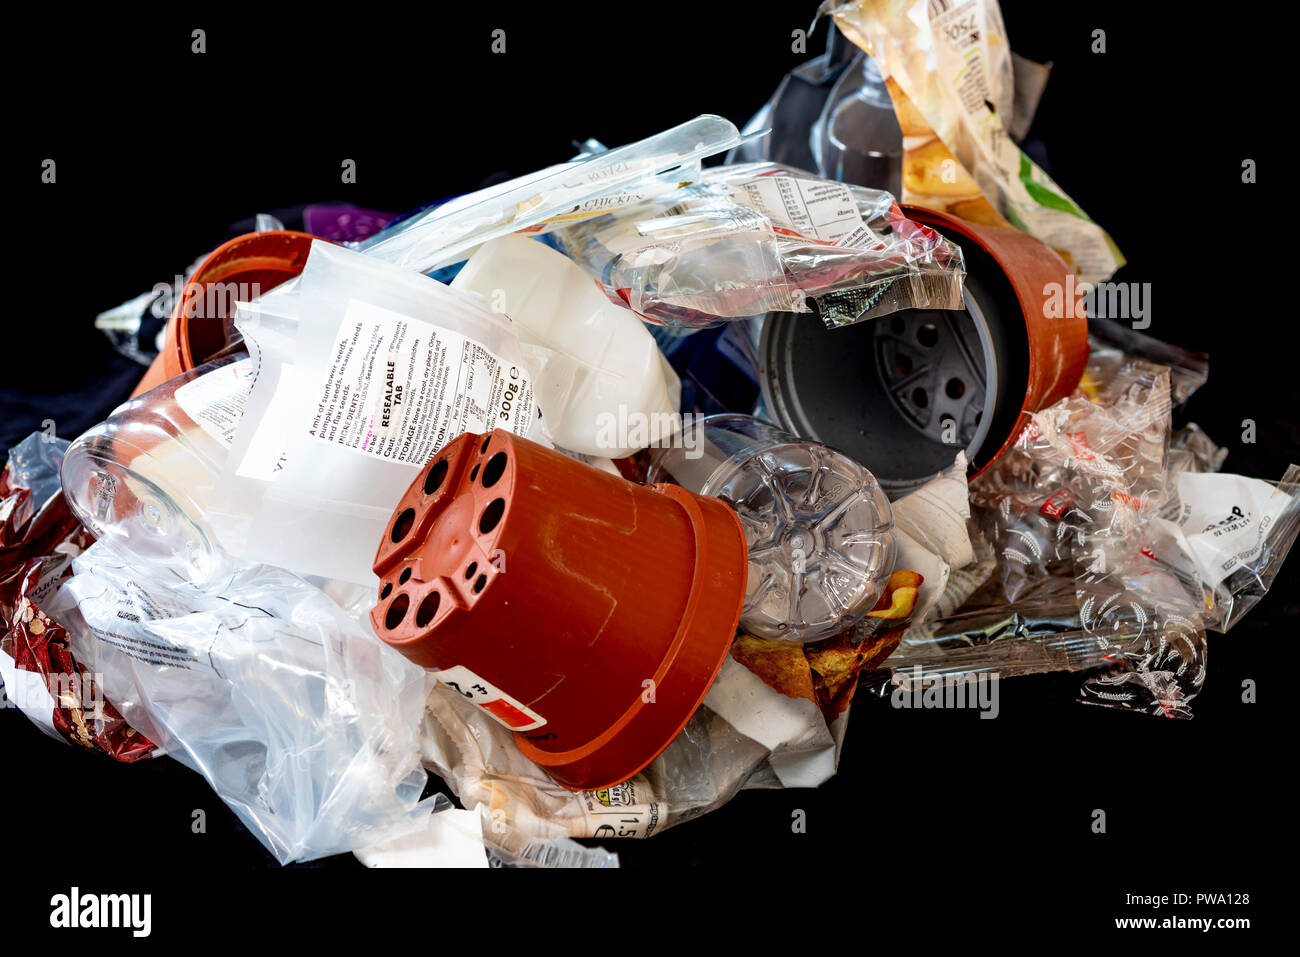 Pile de différentes matières plastiques, certains sont recyclables d'autres pas. Banque D'Images